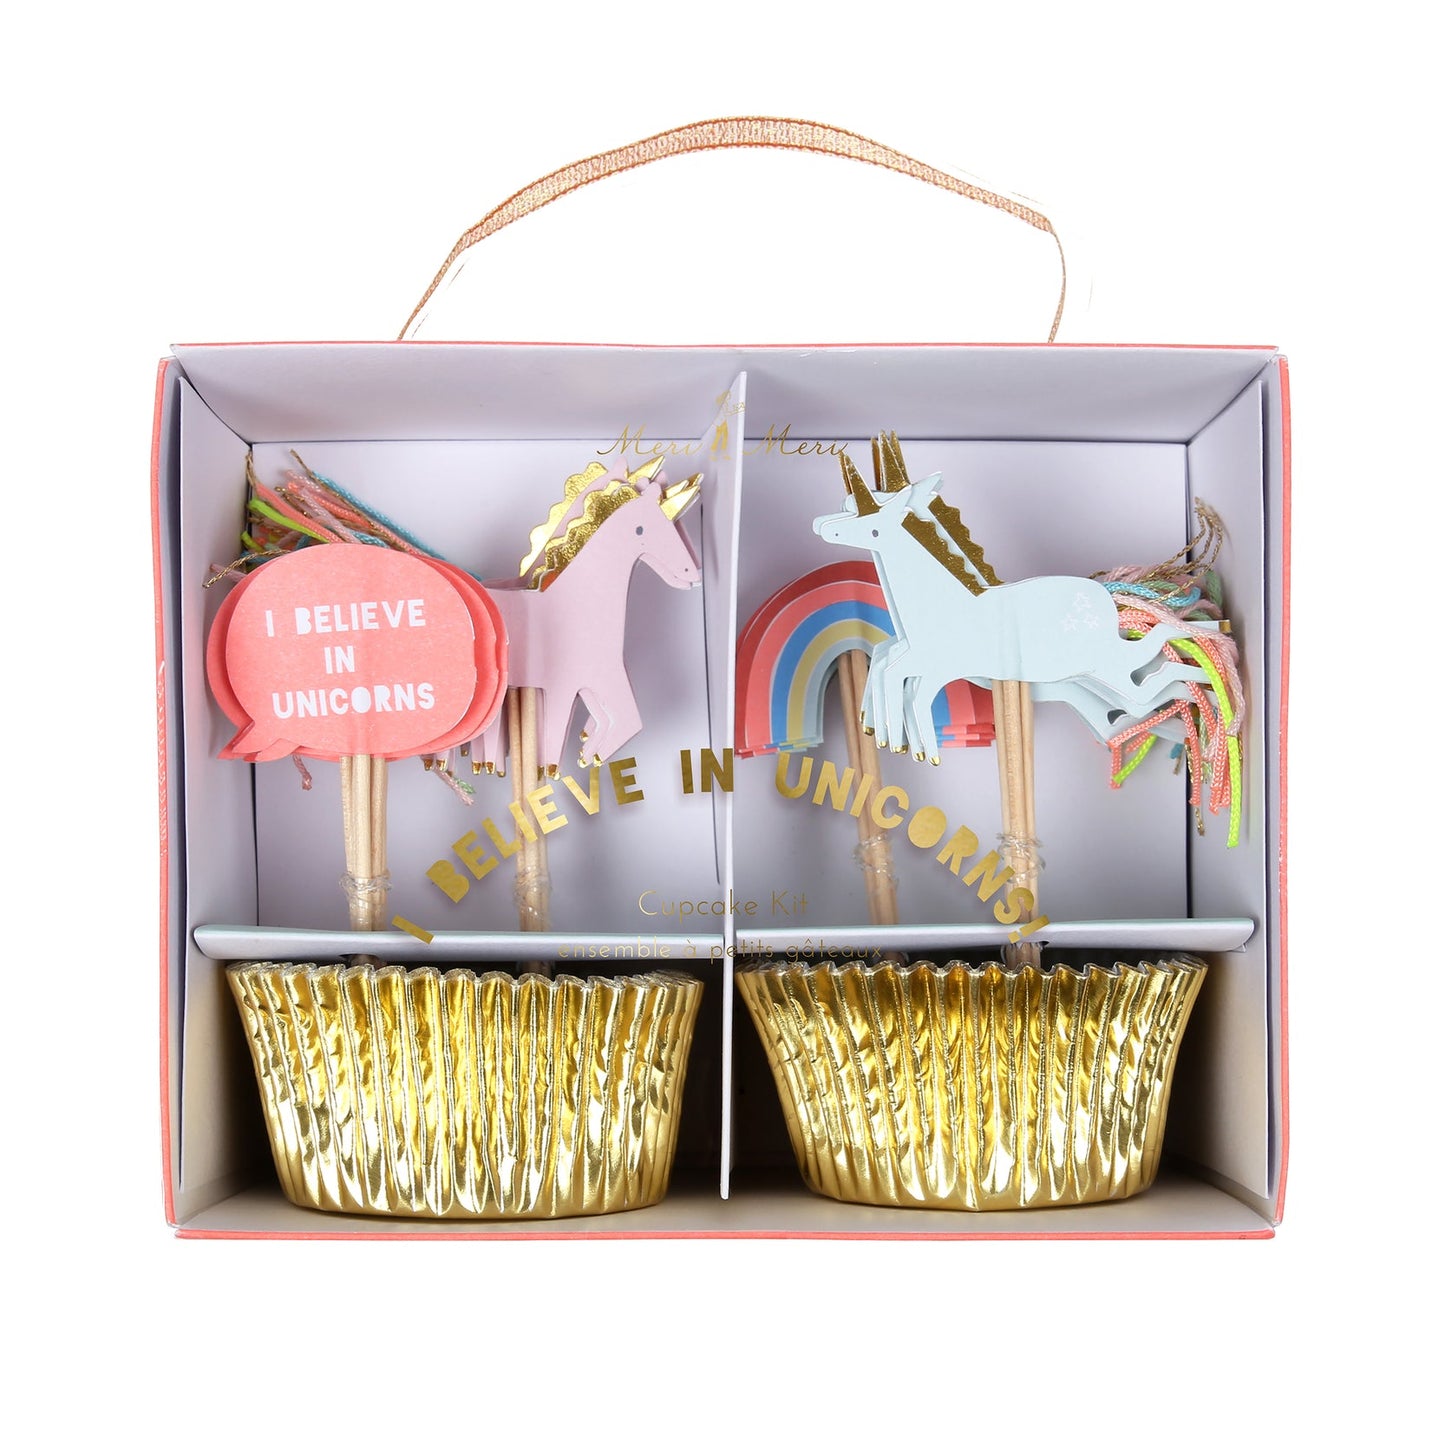 Meri Meri 'I believe in Unicorns' Cupcake Kit